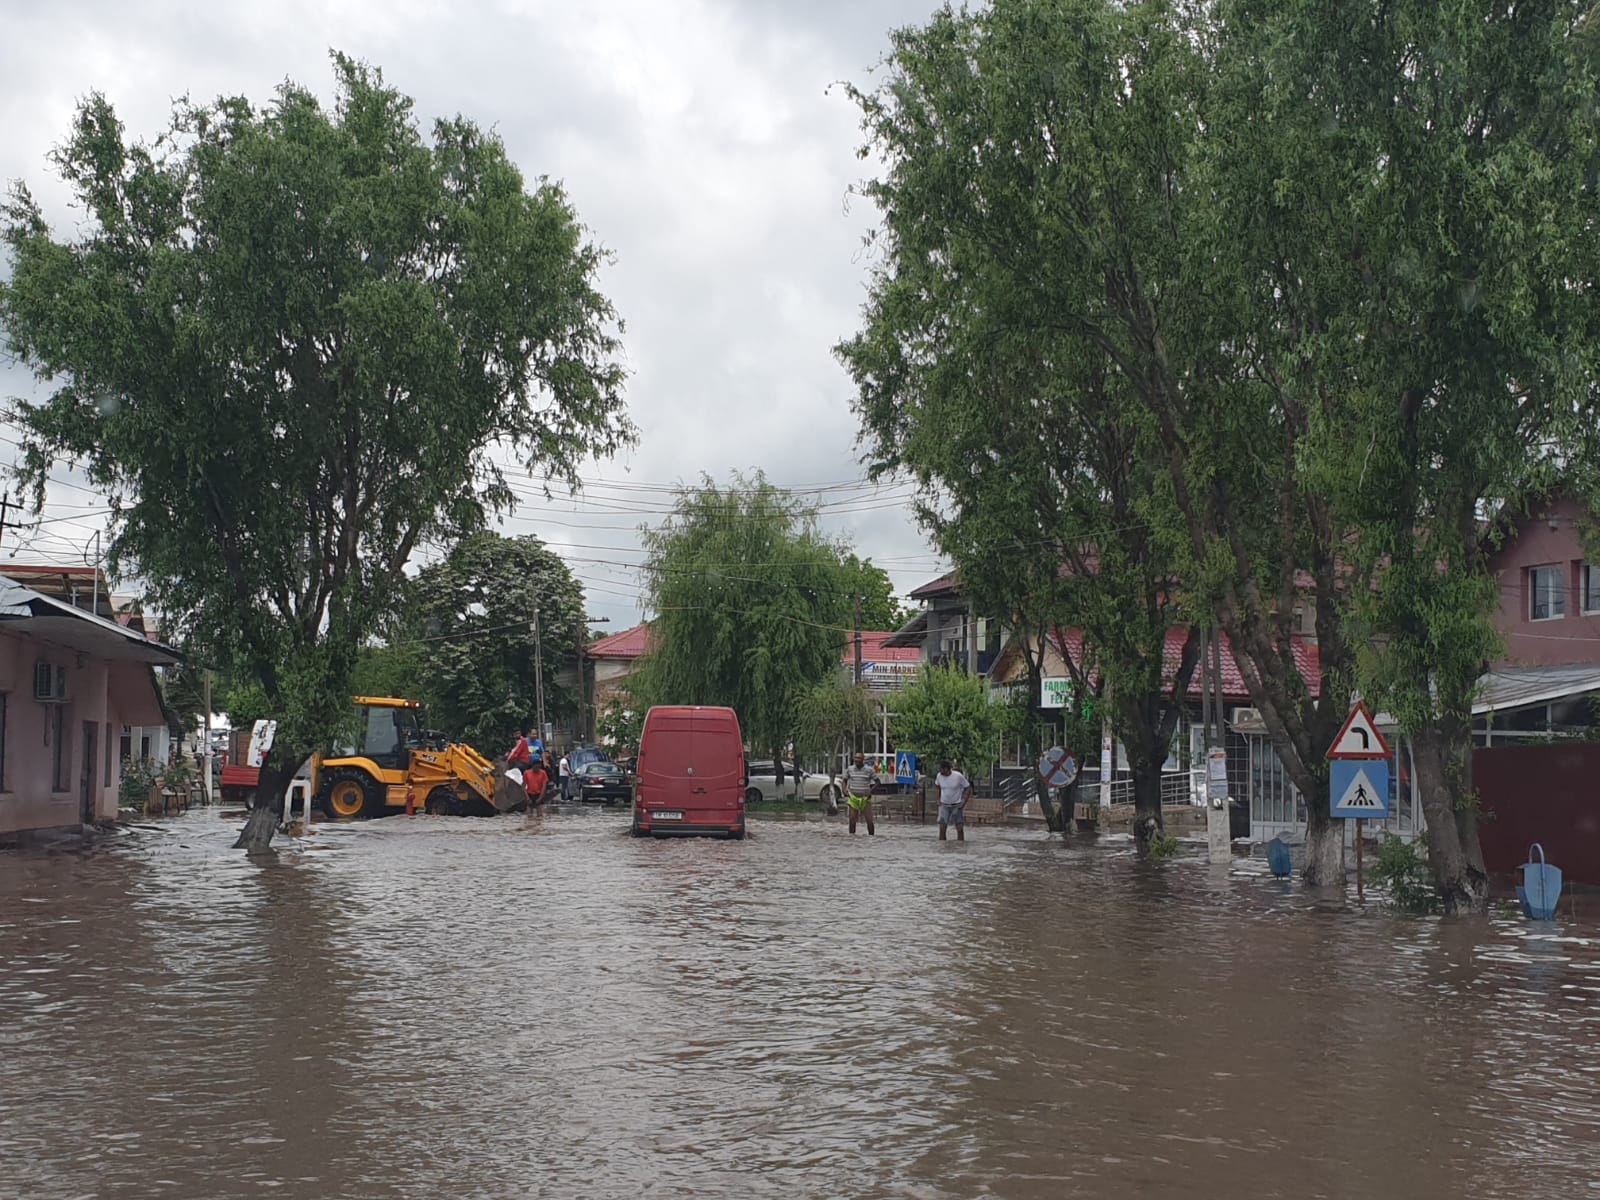 Vremea rea face ravagii Teleorman: aproximativ 60 de gospodării afectate și un de drum european inundat – Ziarul Liber in Teleorman